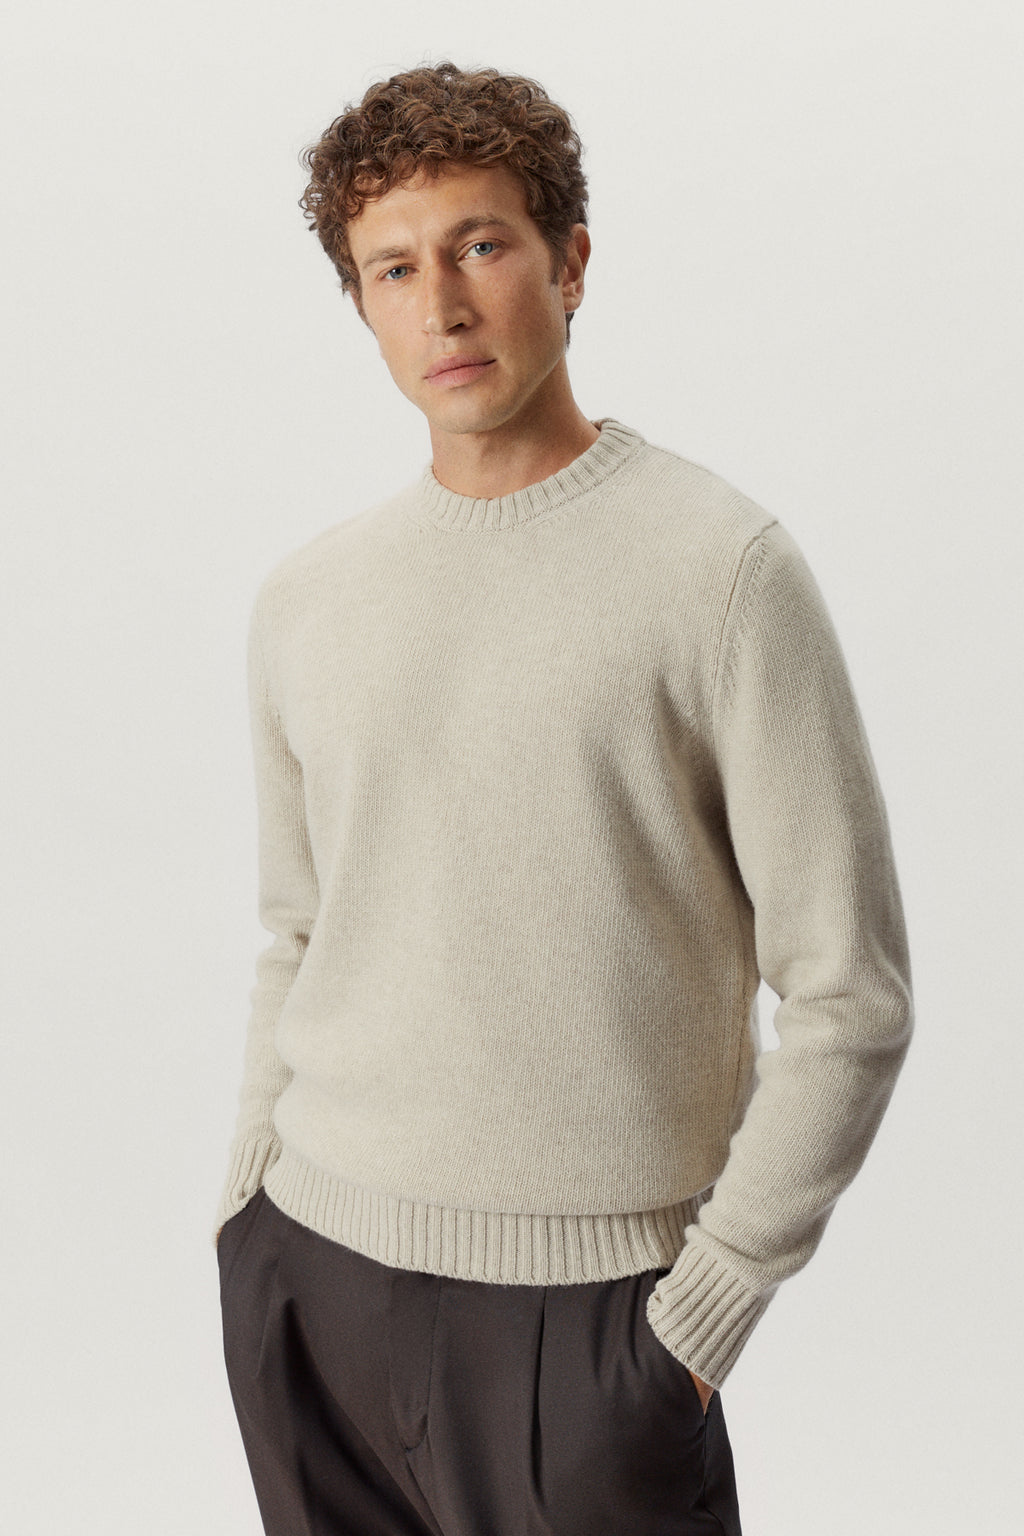 The Woolen Sweater – ARTKNIT STUDIOS